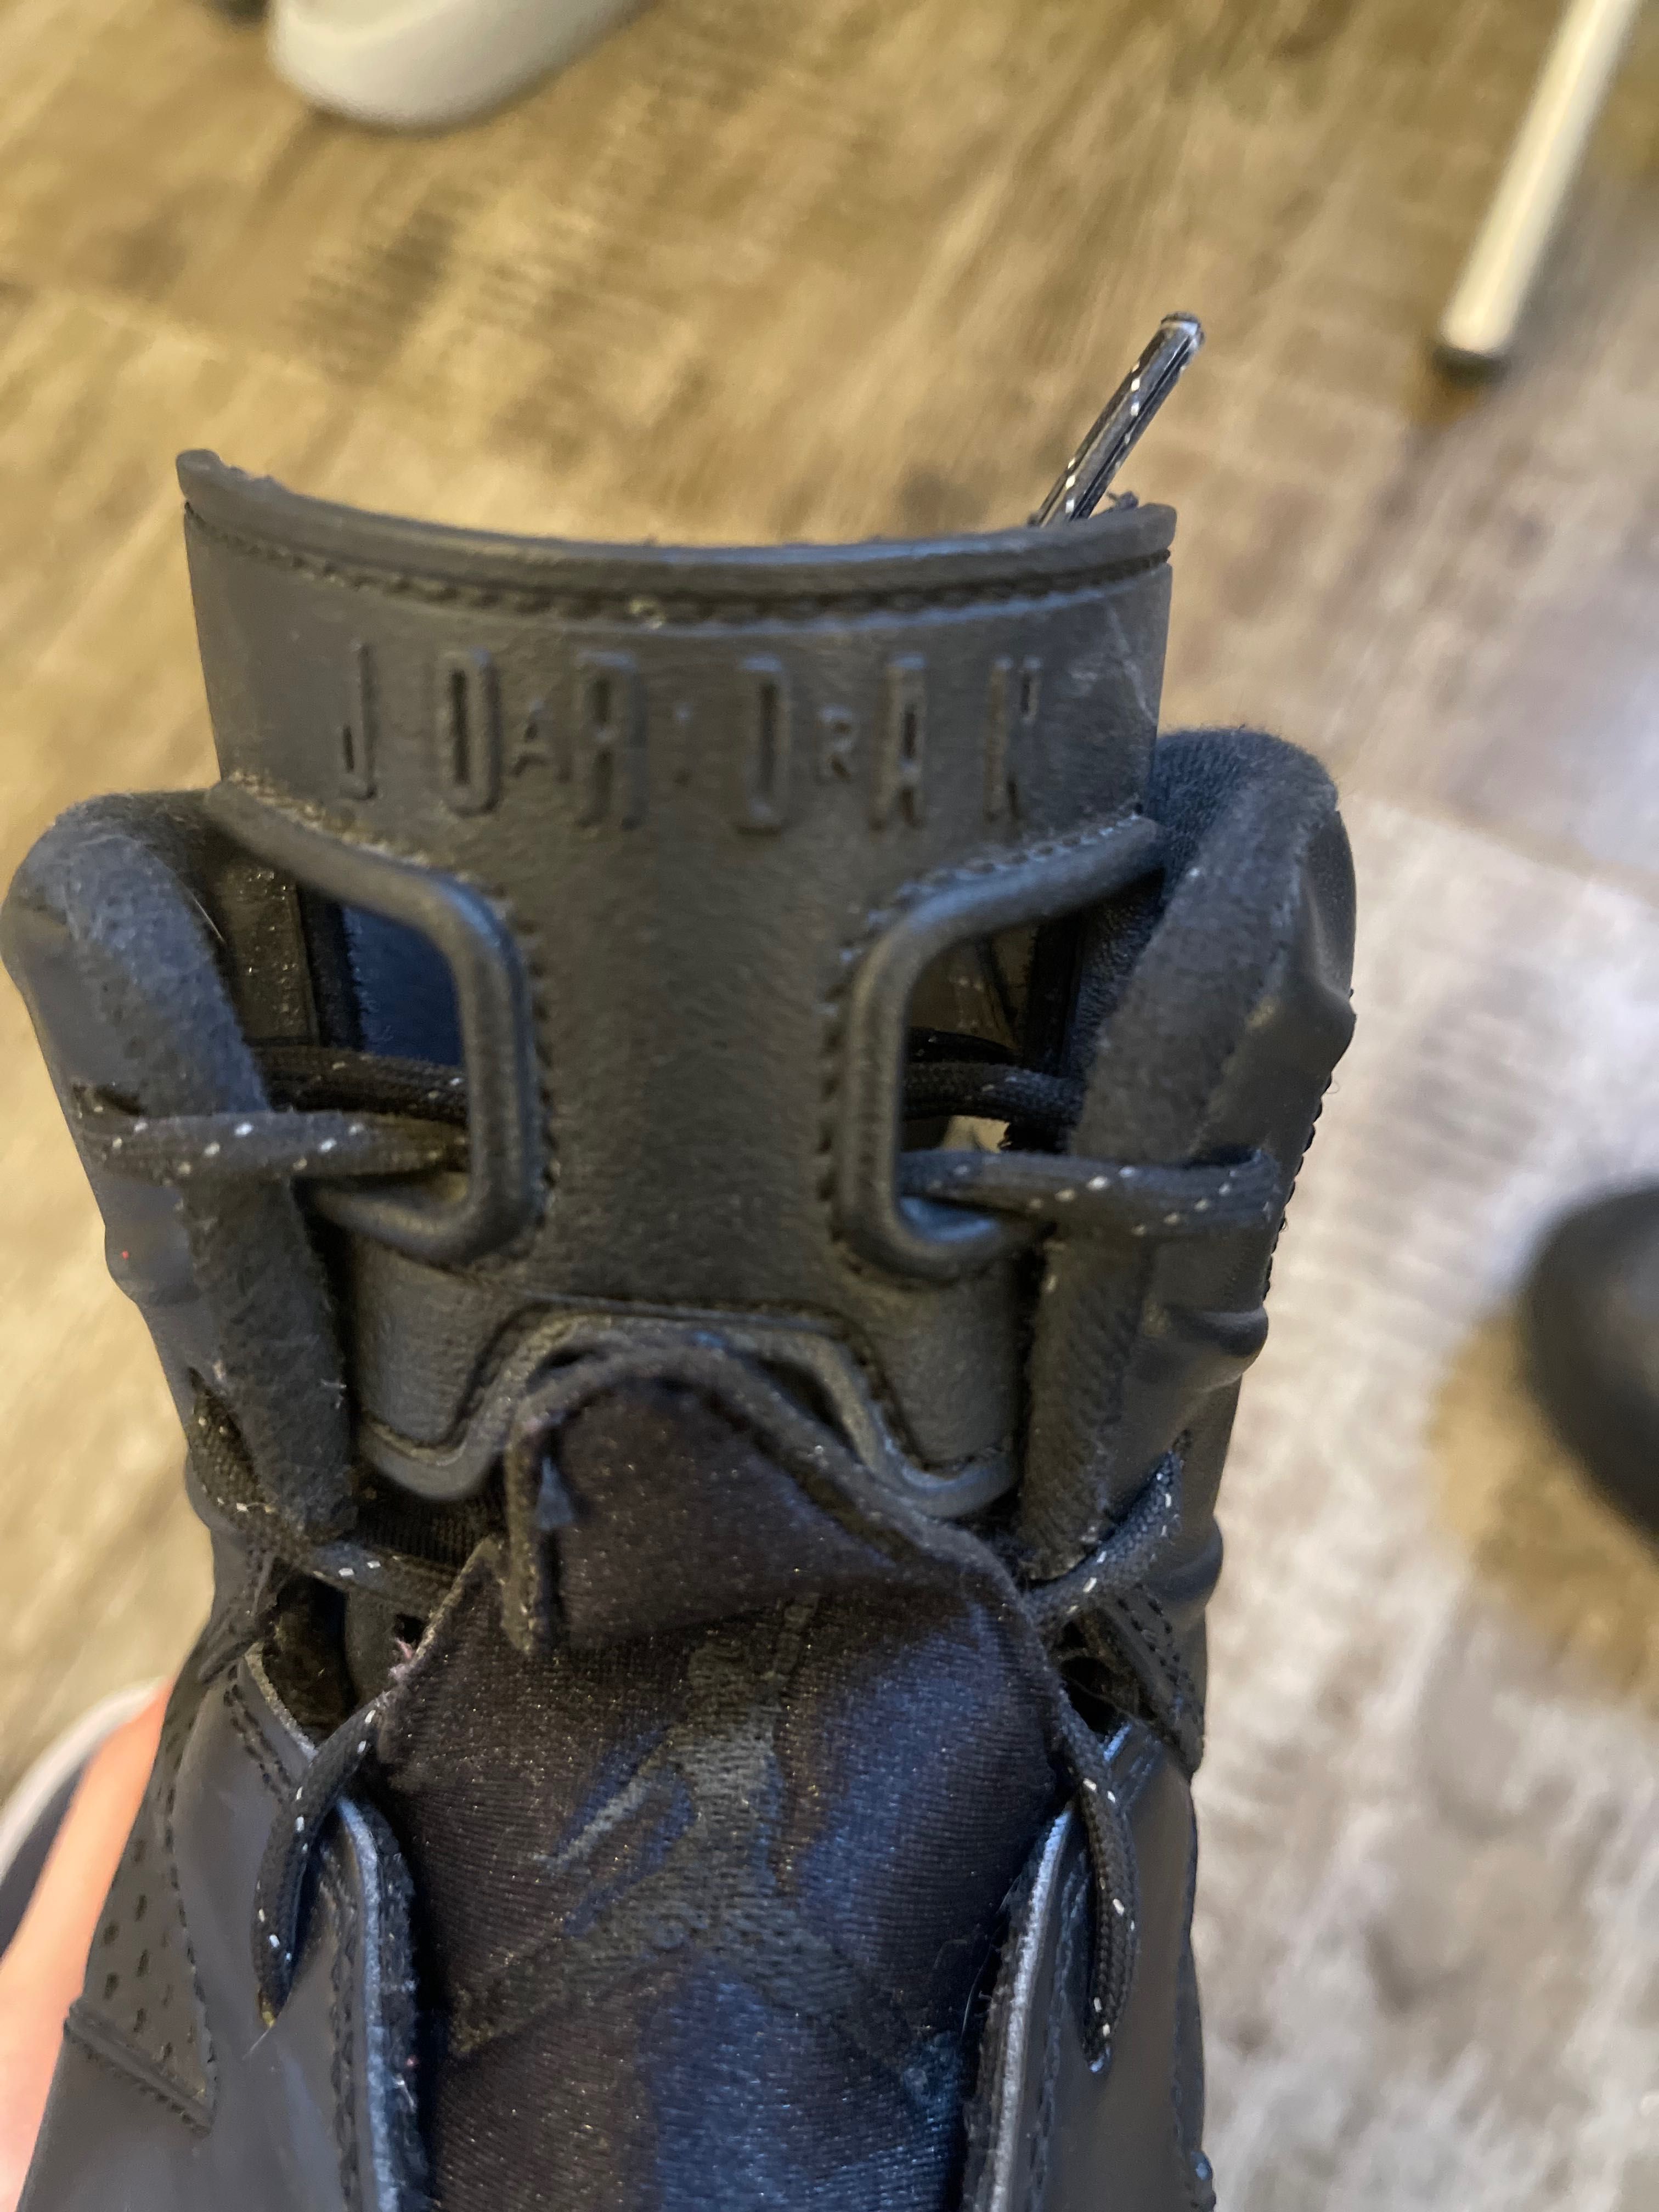 Air Jordan 6 Retro "Black Cat" sneakers